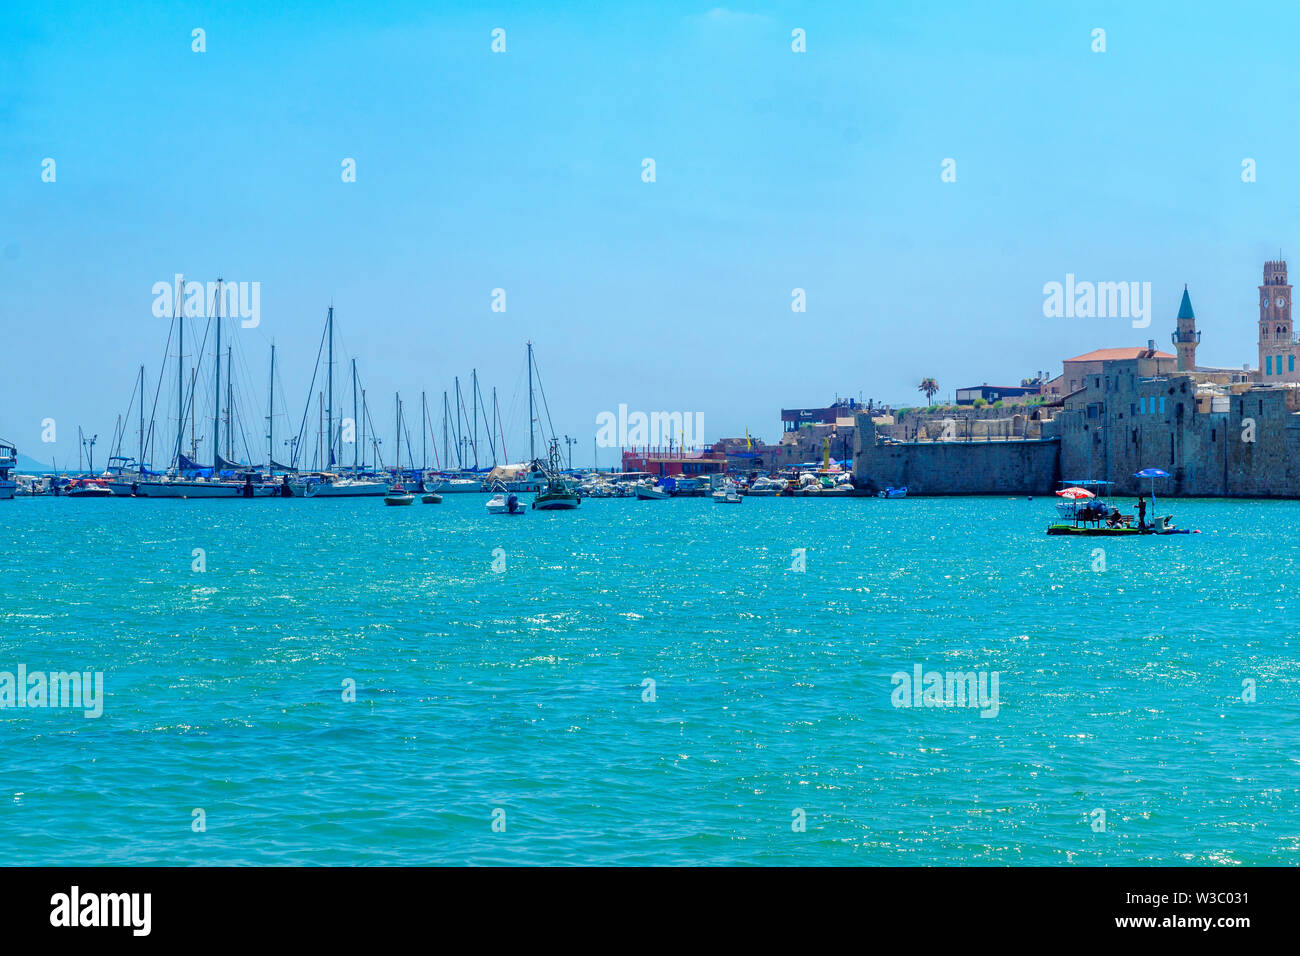 Acre, Israël - Juillet 08, 2019 : vue sur la digue et le port de pêche, avec les habitants et les visiteurs, dans la vieille ville d'Acre (Akko), Israël Banque D'Images